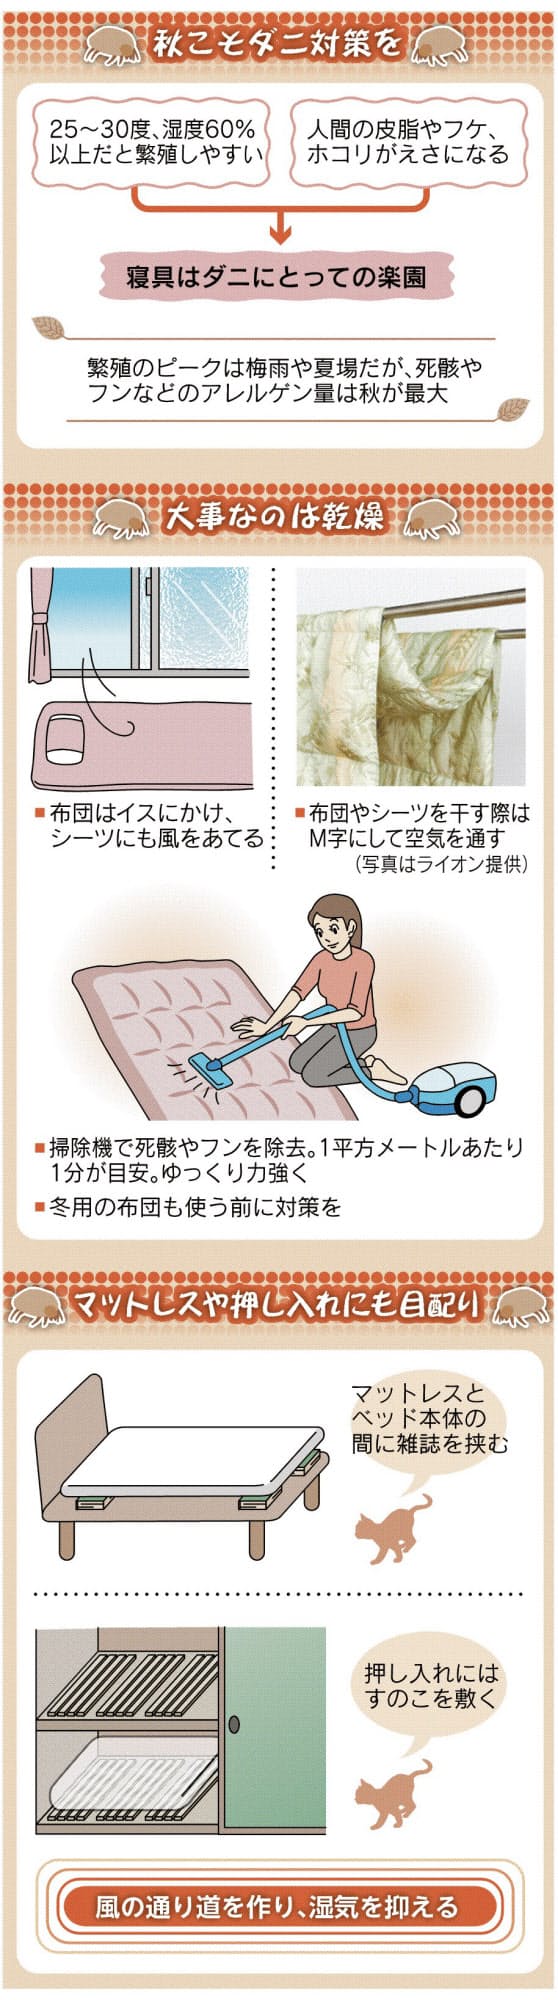 布団 枕 寝具に潜むダニ 撃退しよう Nikkei Style